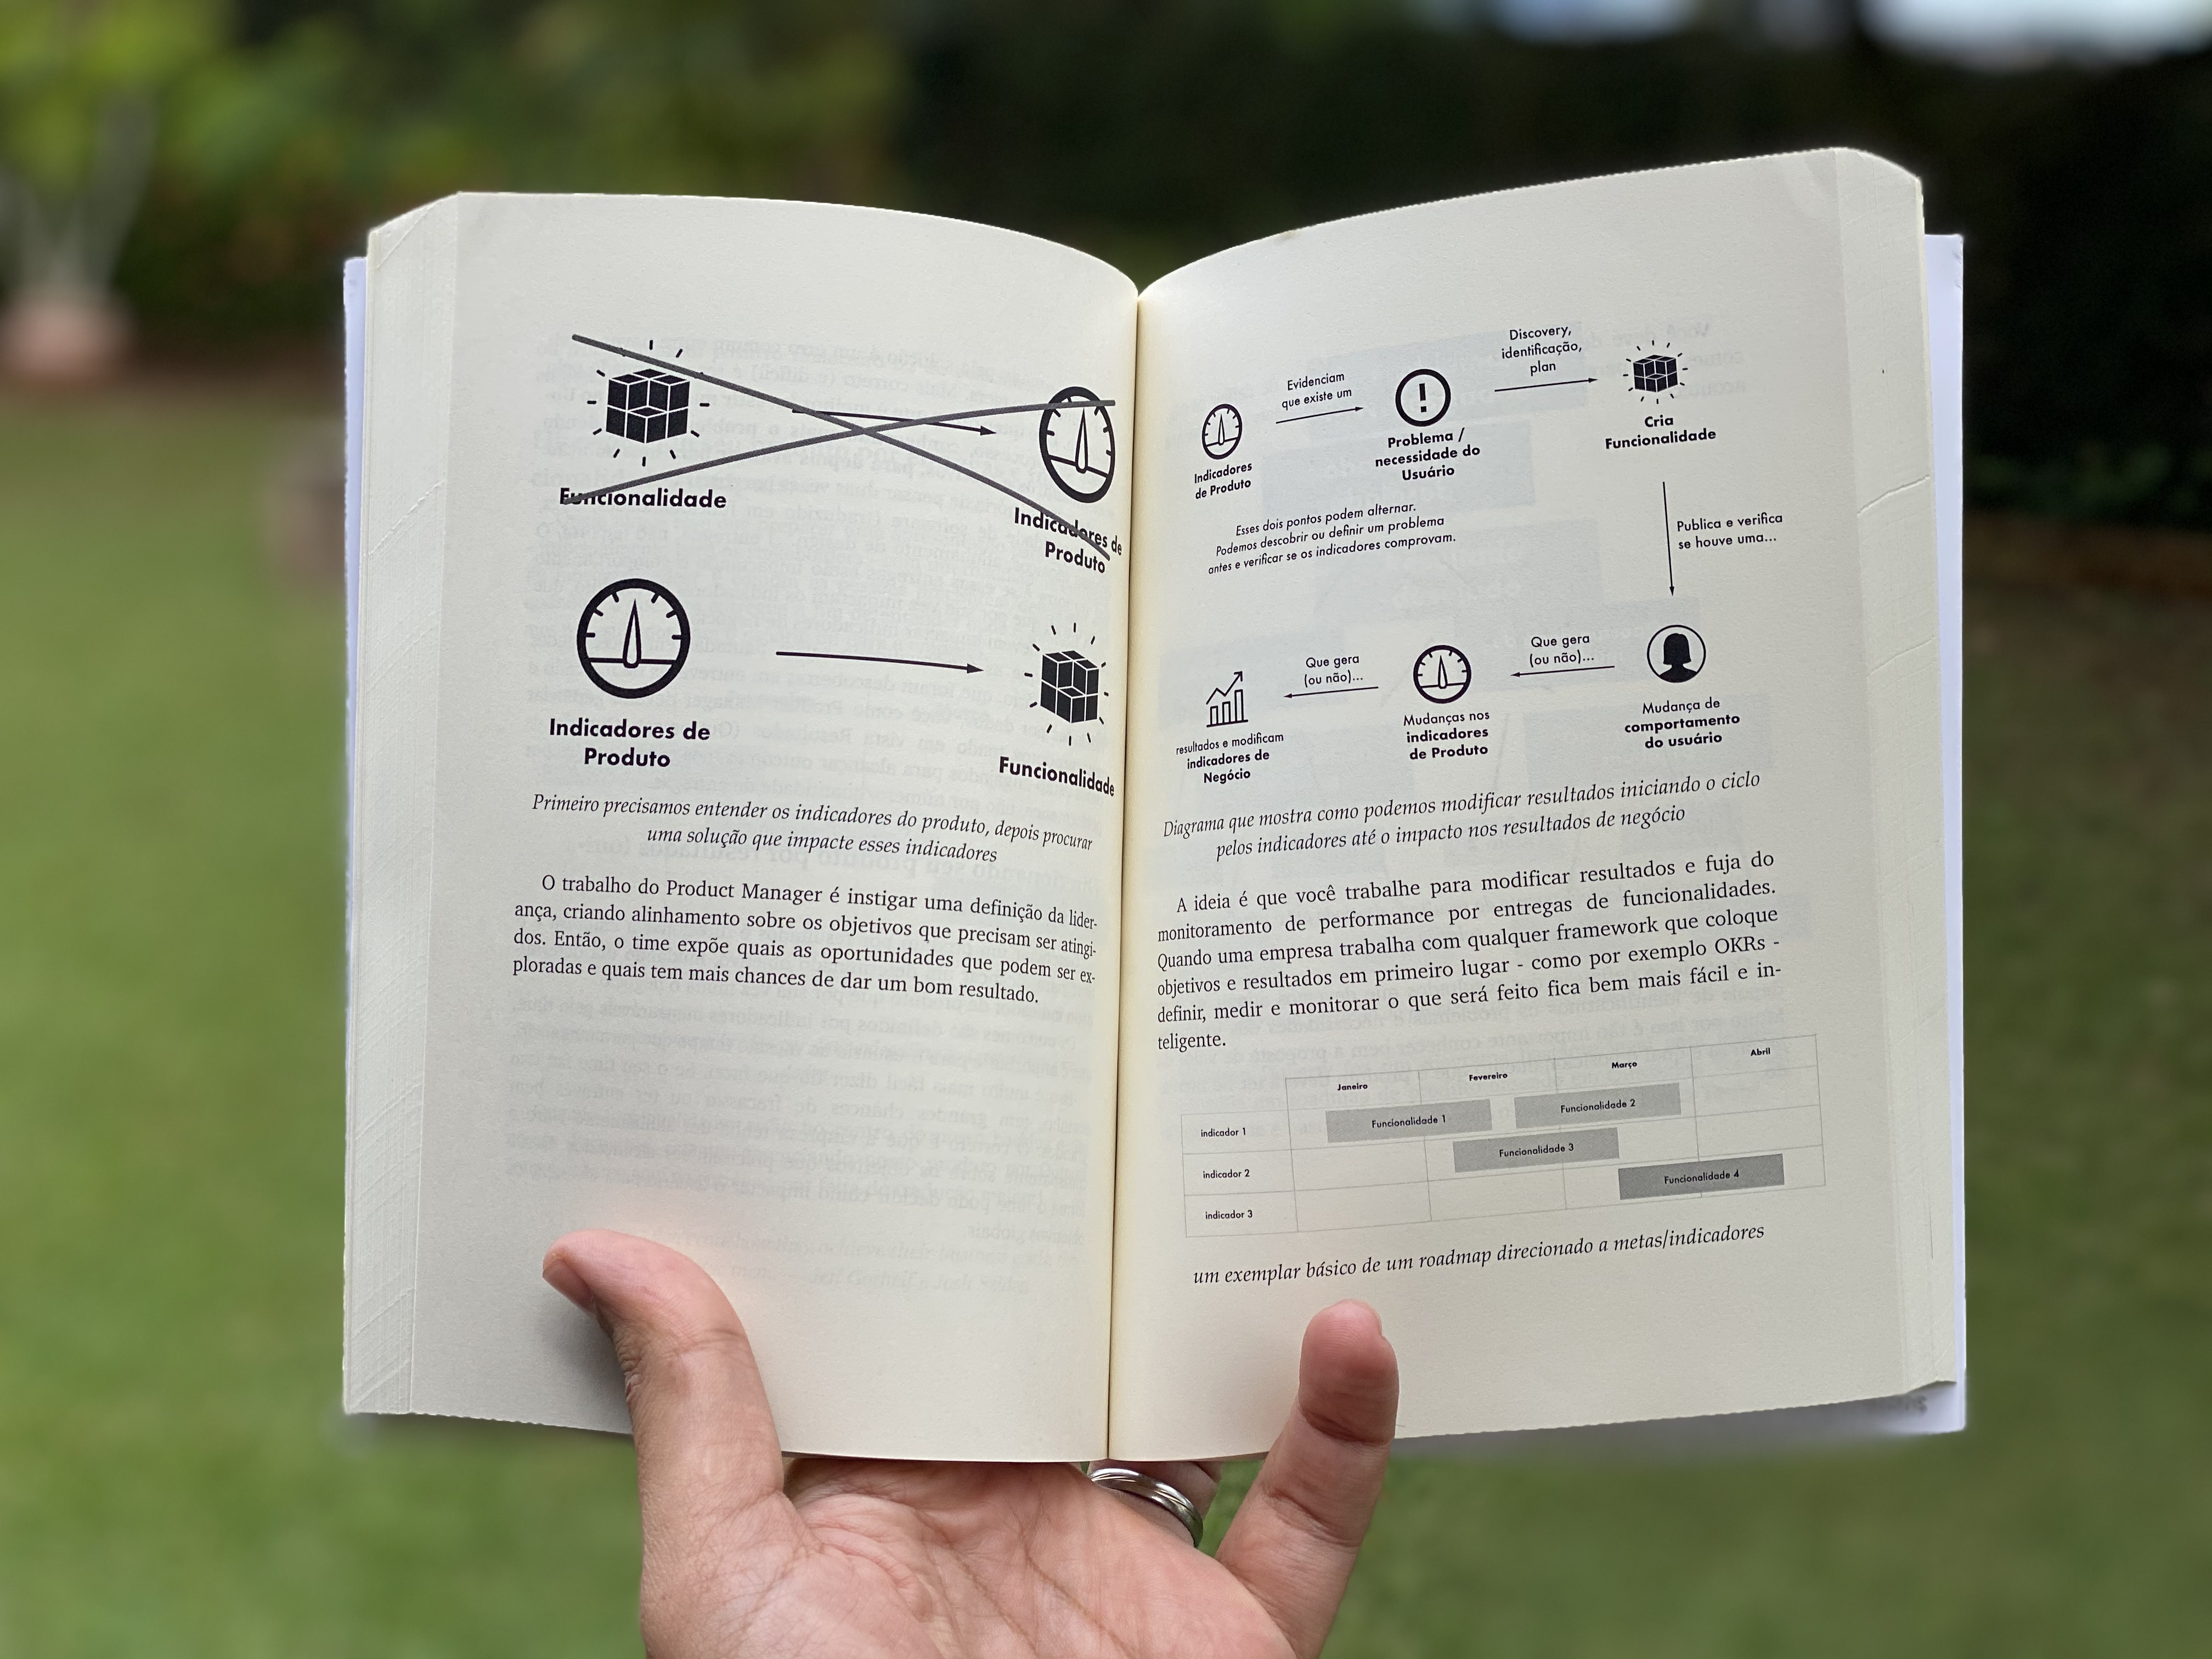 capa do livro Gestão Moderna de Produtos Digitais - imagem ilustrando a jornada de usuário